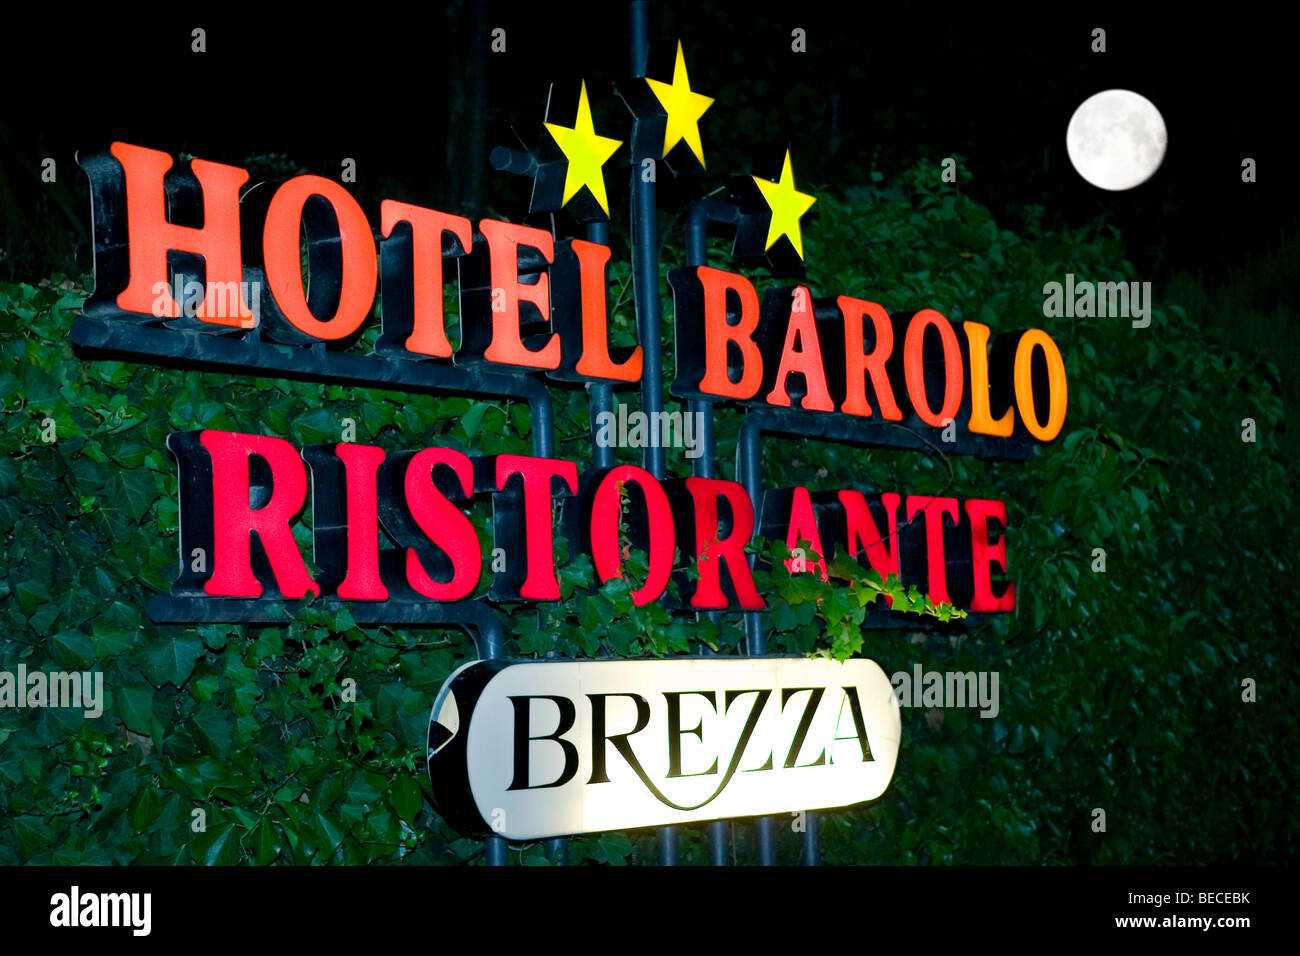 Sign of Hotel Barolo Ristorante Stock Photo